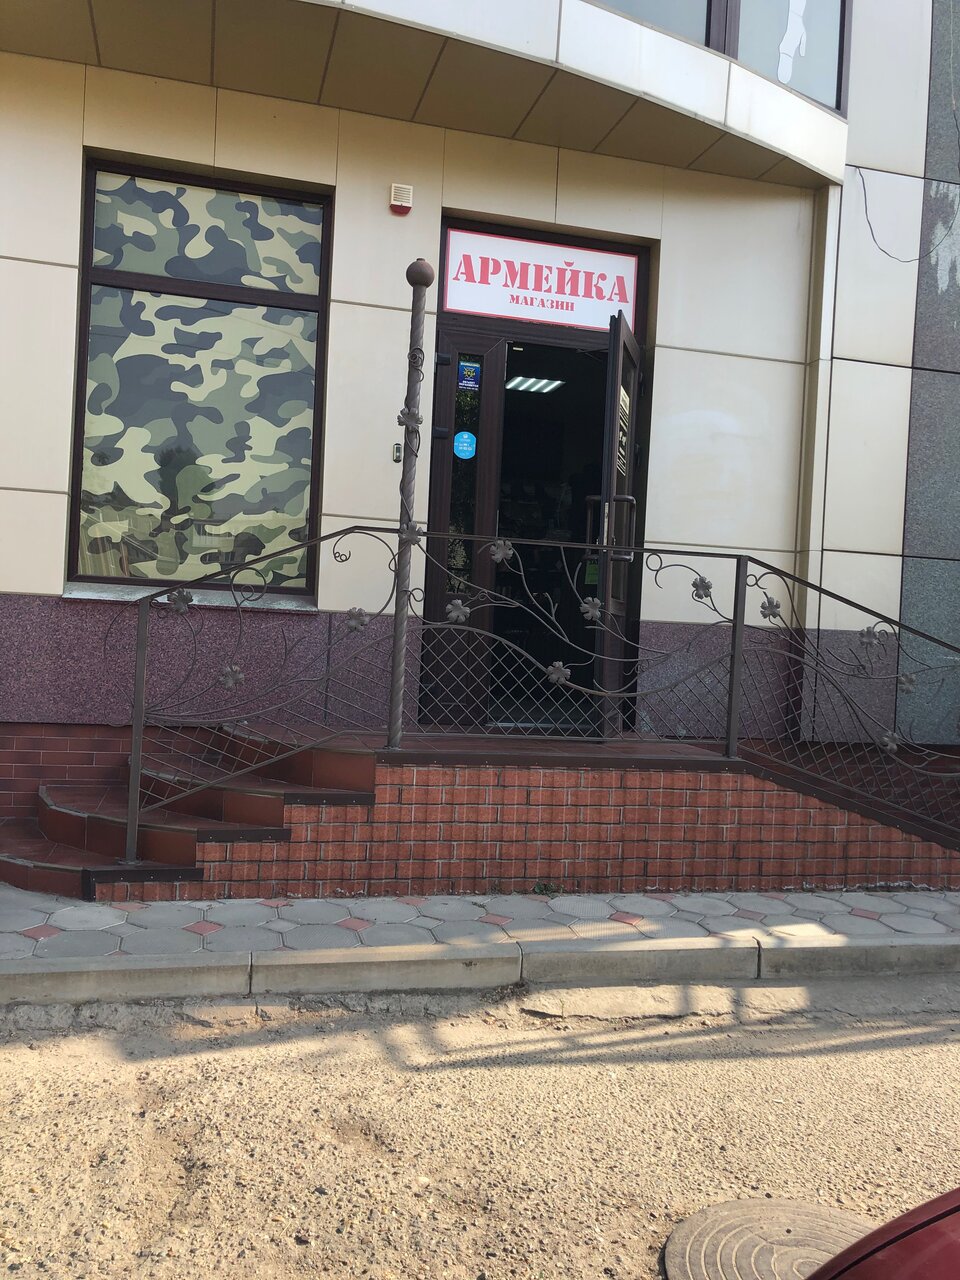 Вход в магазин "Армейка" на Белинского в Кропоткине